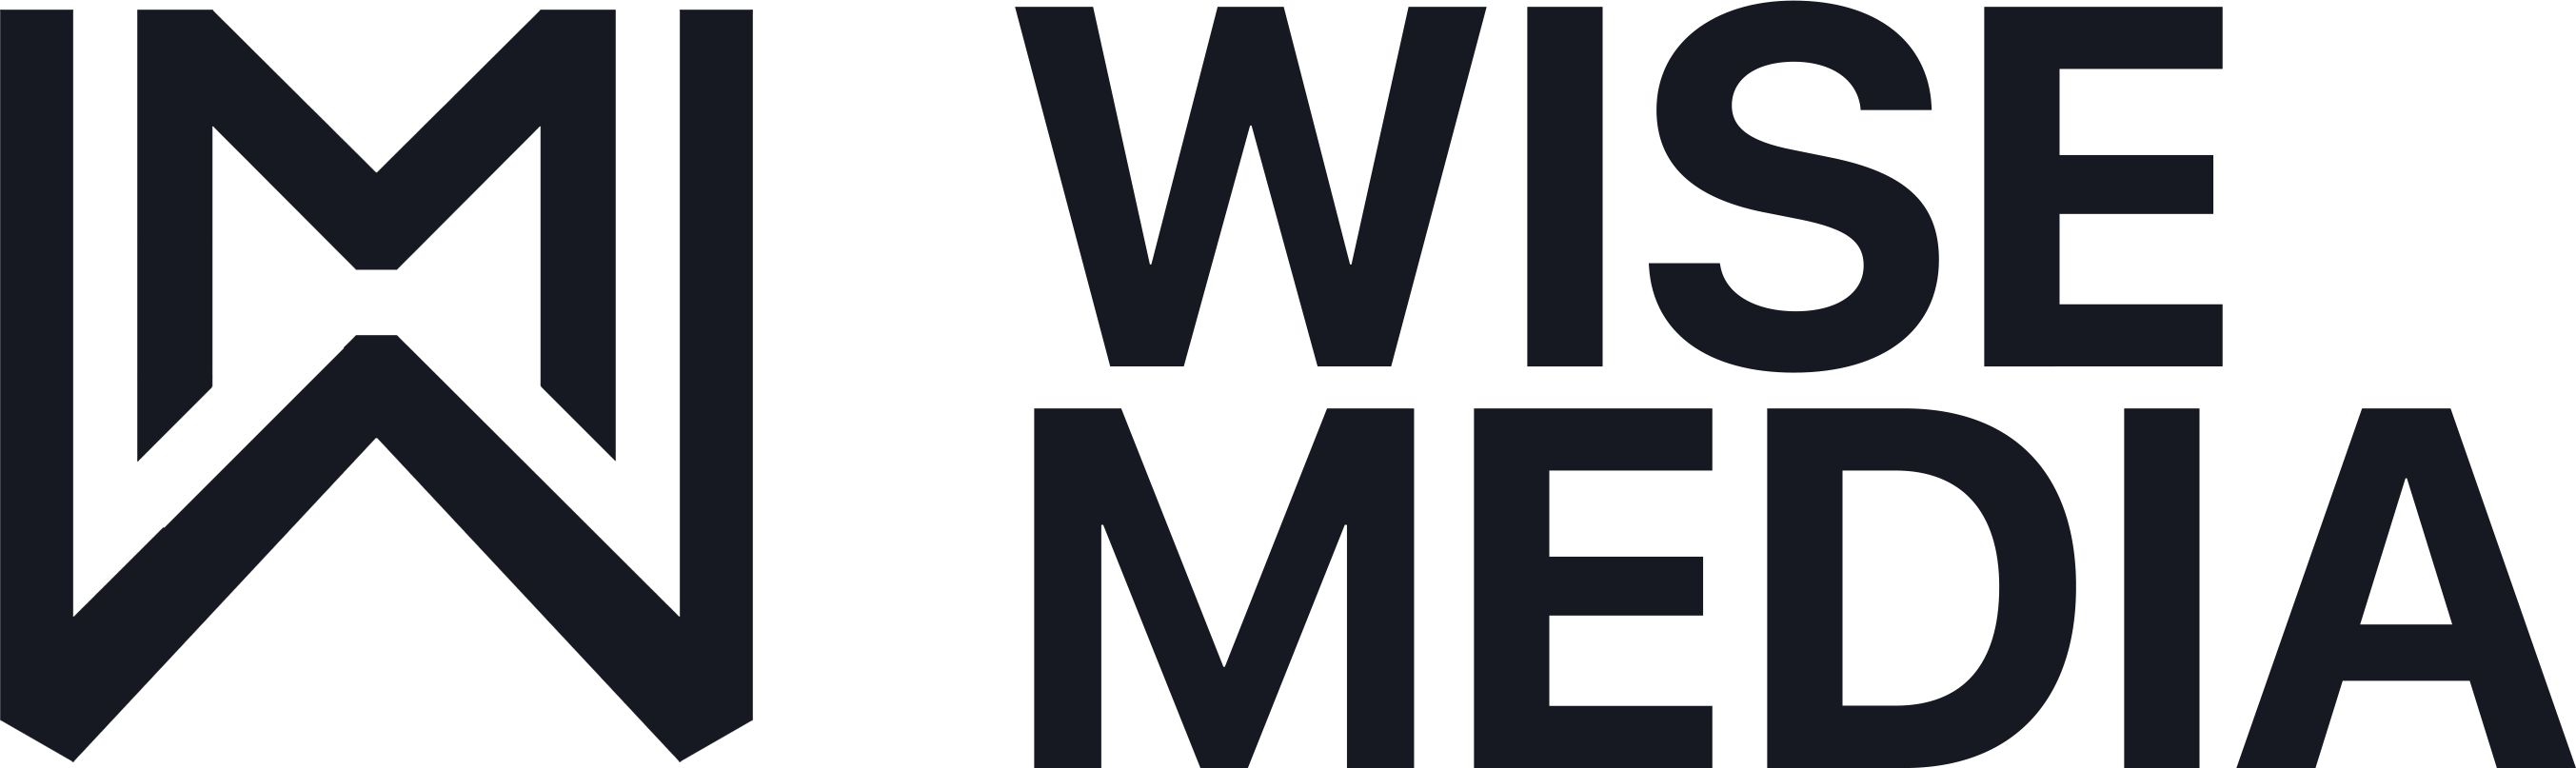 Cody Wise | Wise Media | Branding, Designs & Websites